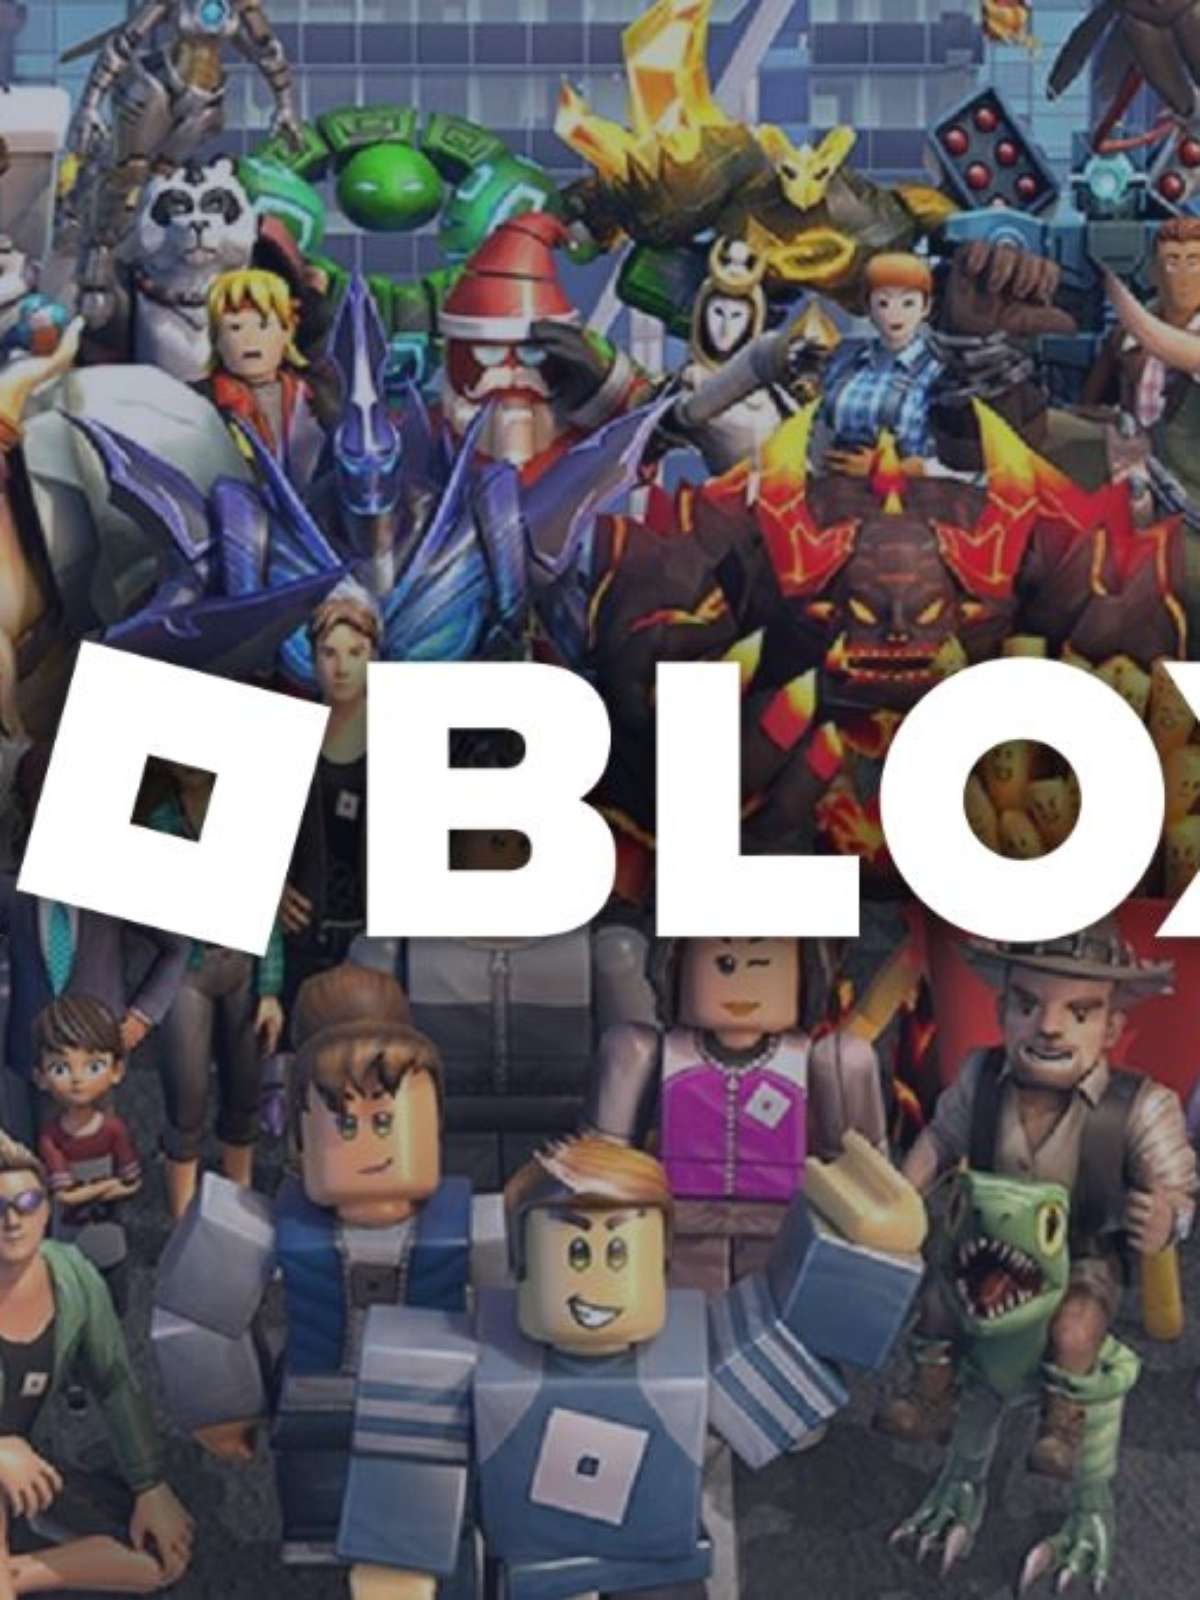 Os 5 melhores jogos dentro do Roblox